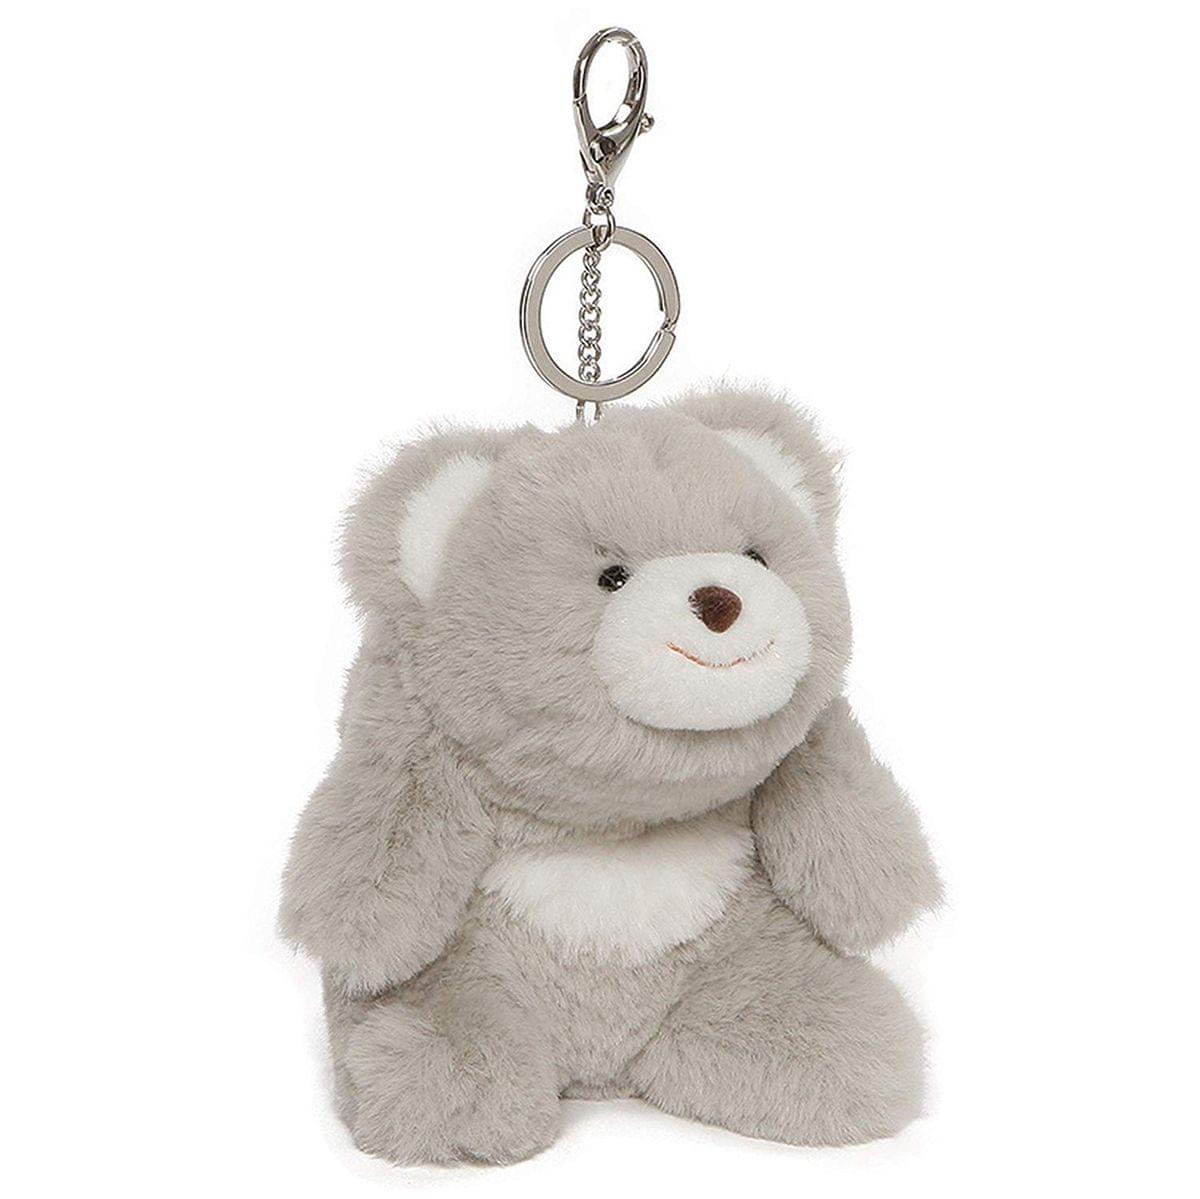 Snuffles the Teddy Bear 5-Inch Plush Keychain - Grey